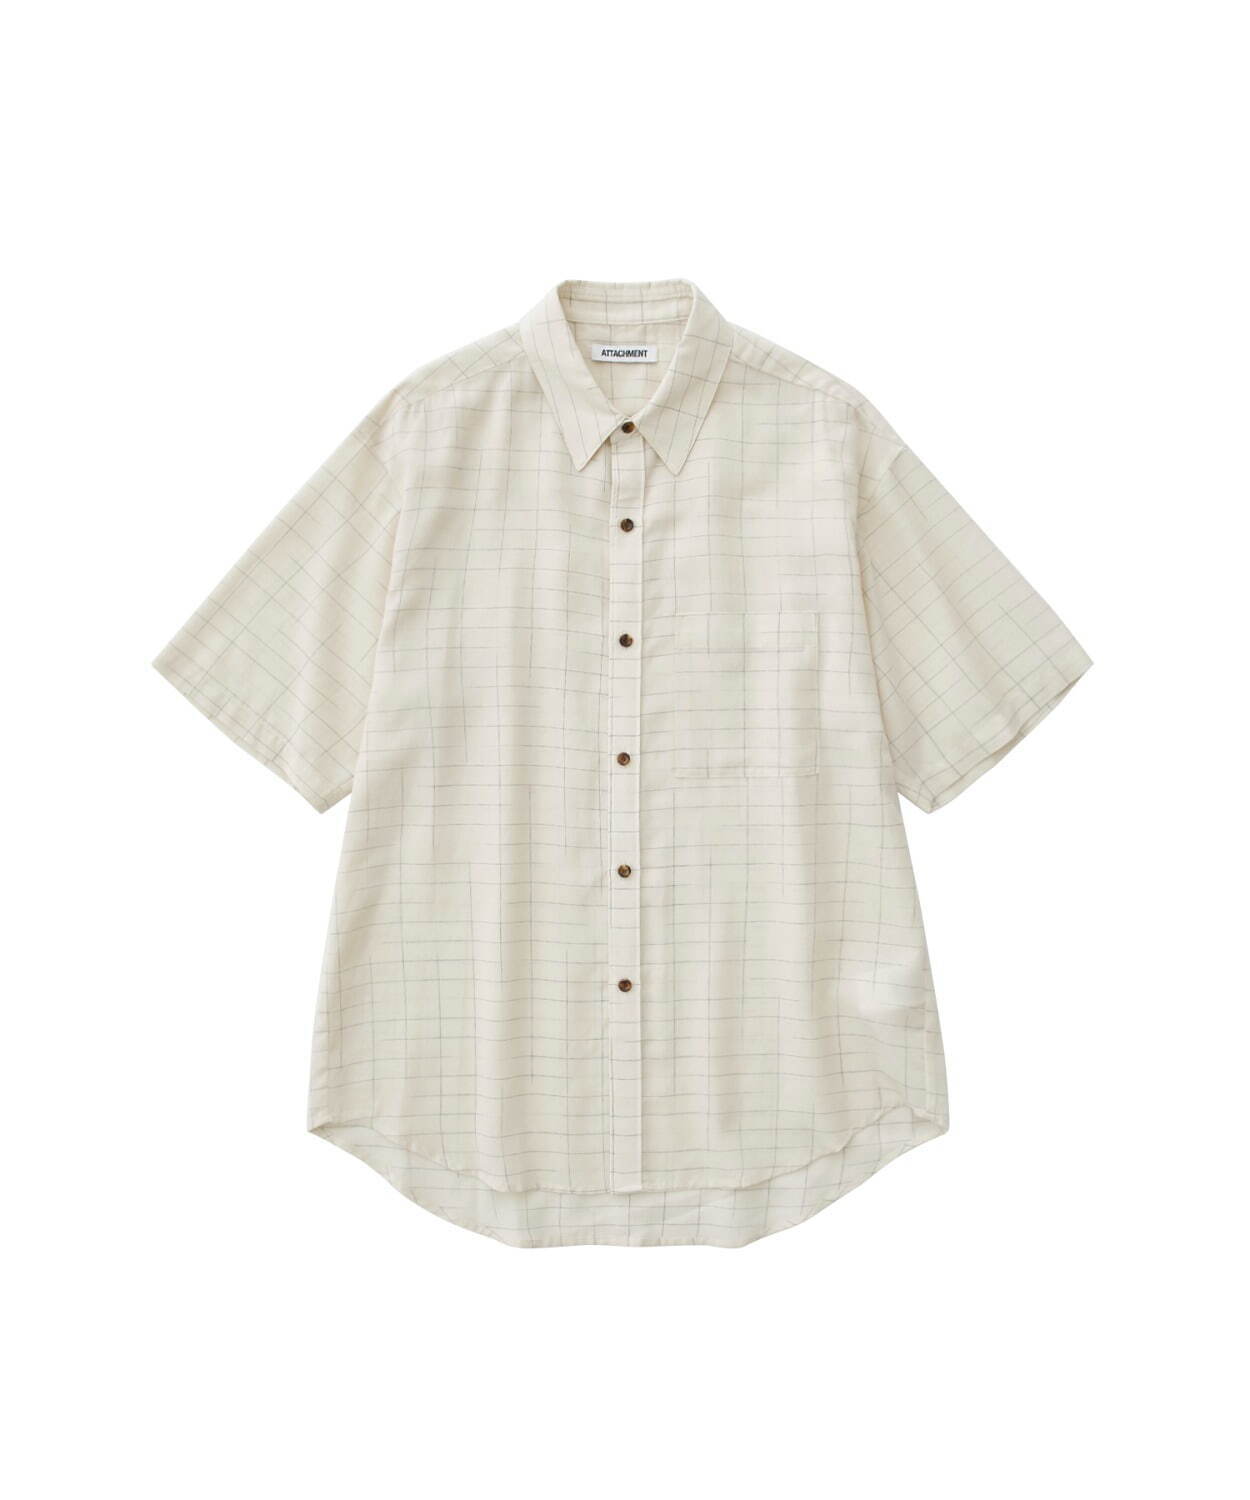 マルニ レギュラーカラーショートスリーブシャツ 半袖シャツ